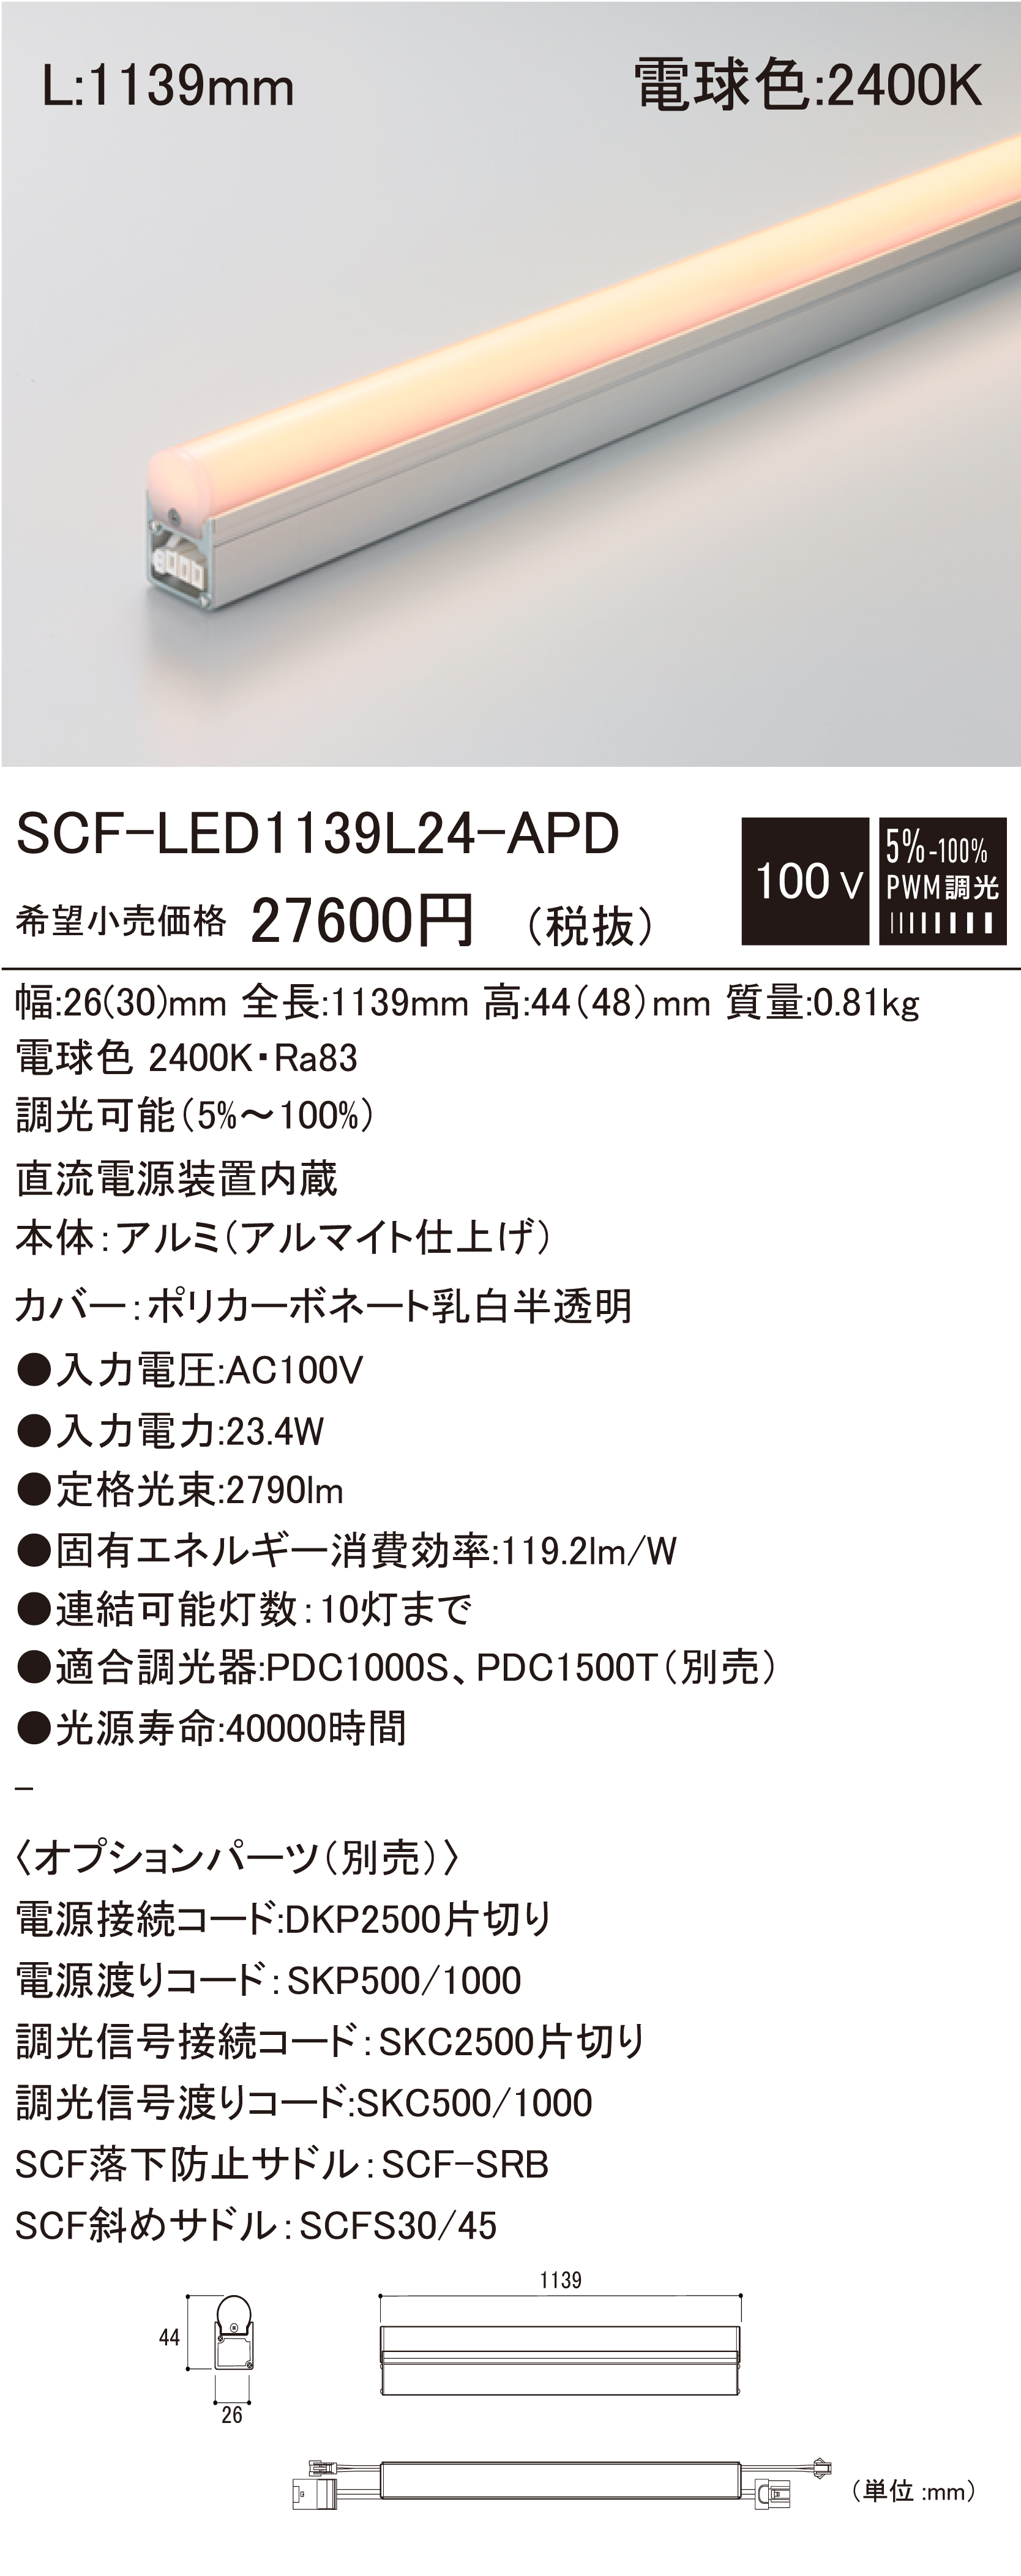 SCF-LED-APD 建築化照明 ダウンロード | DNライティング株式会社